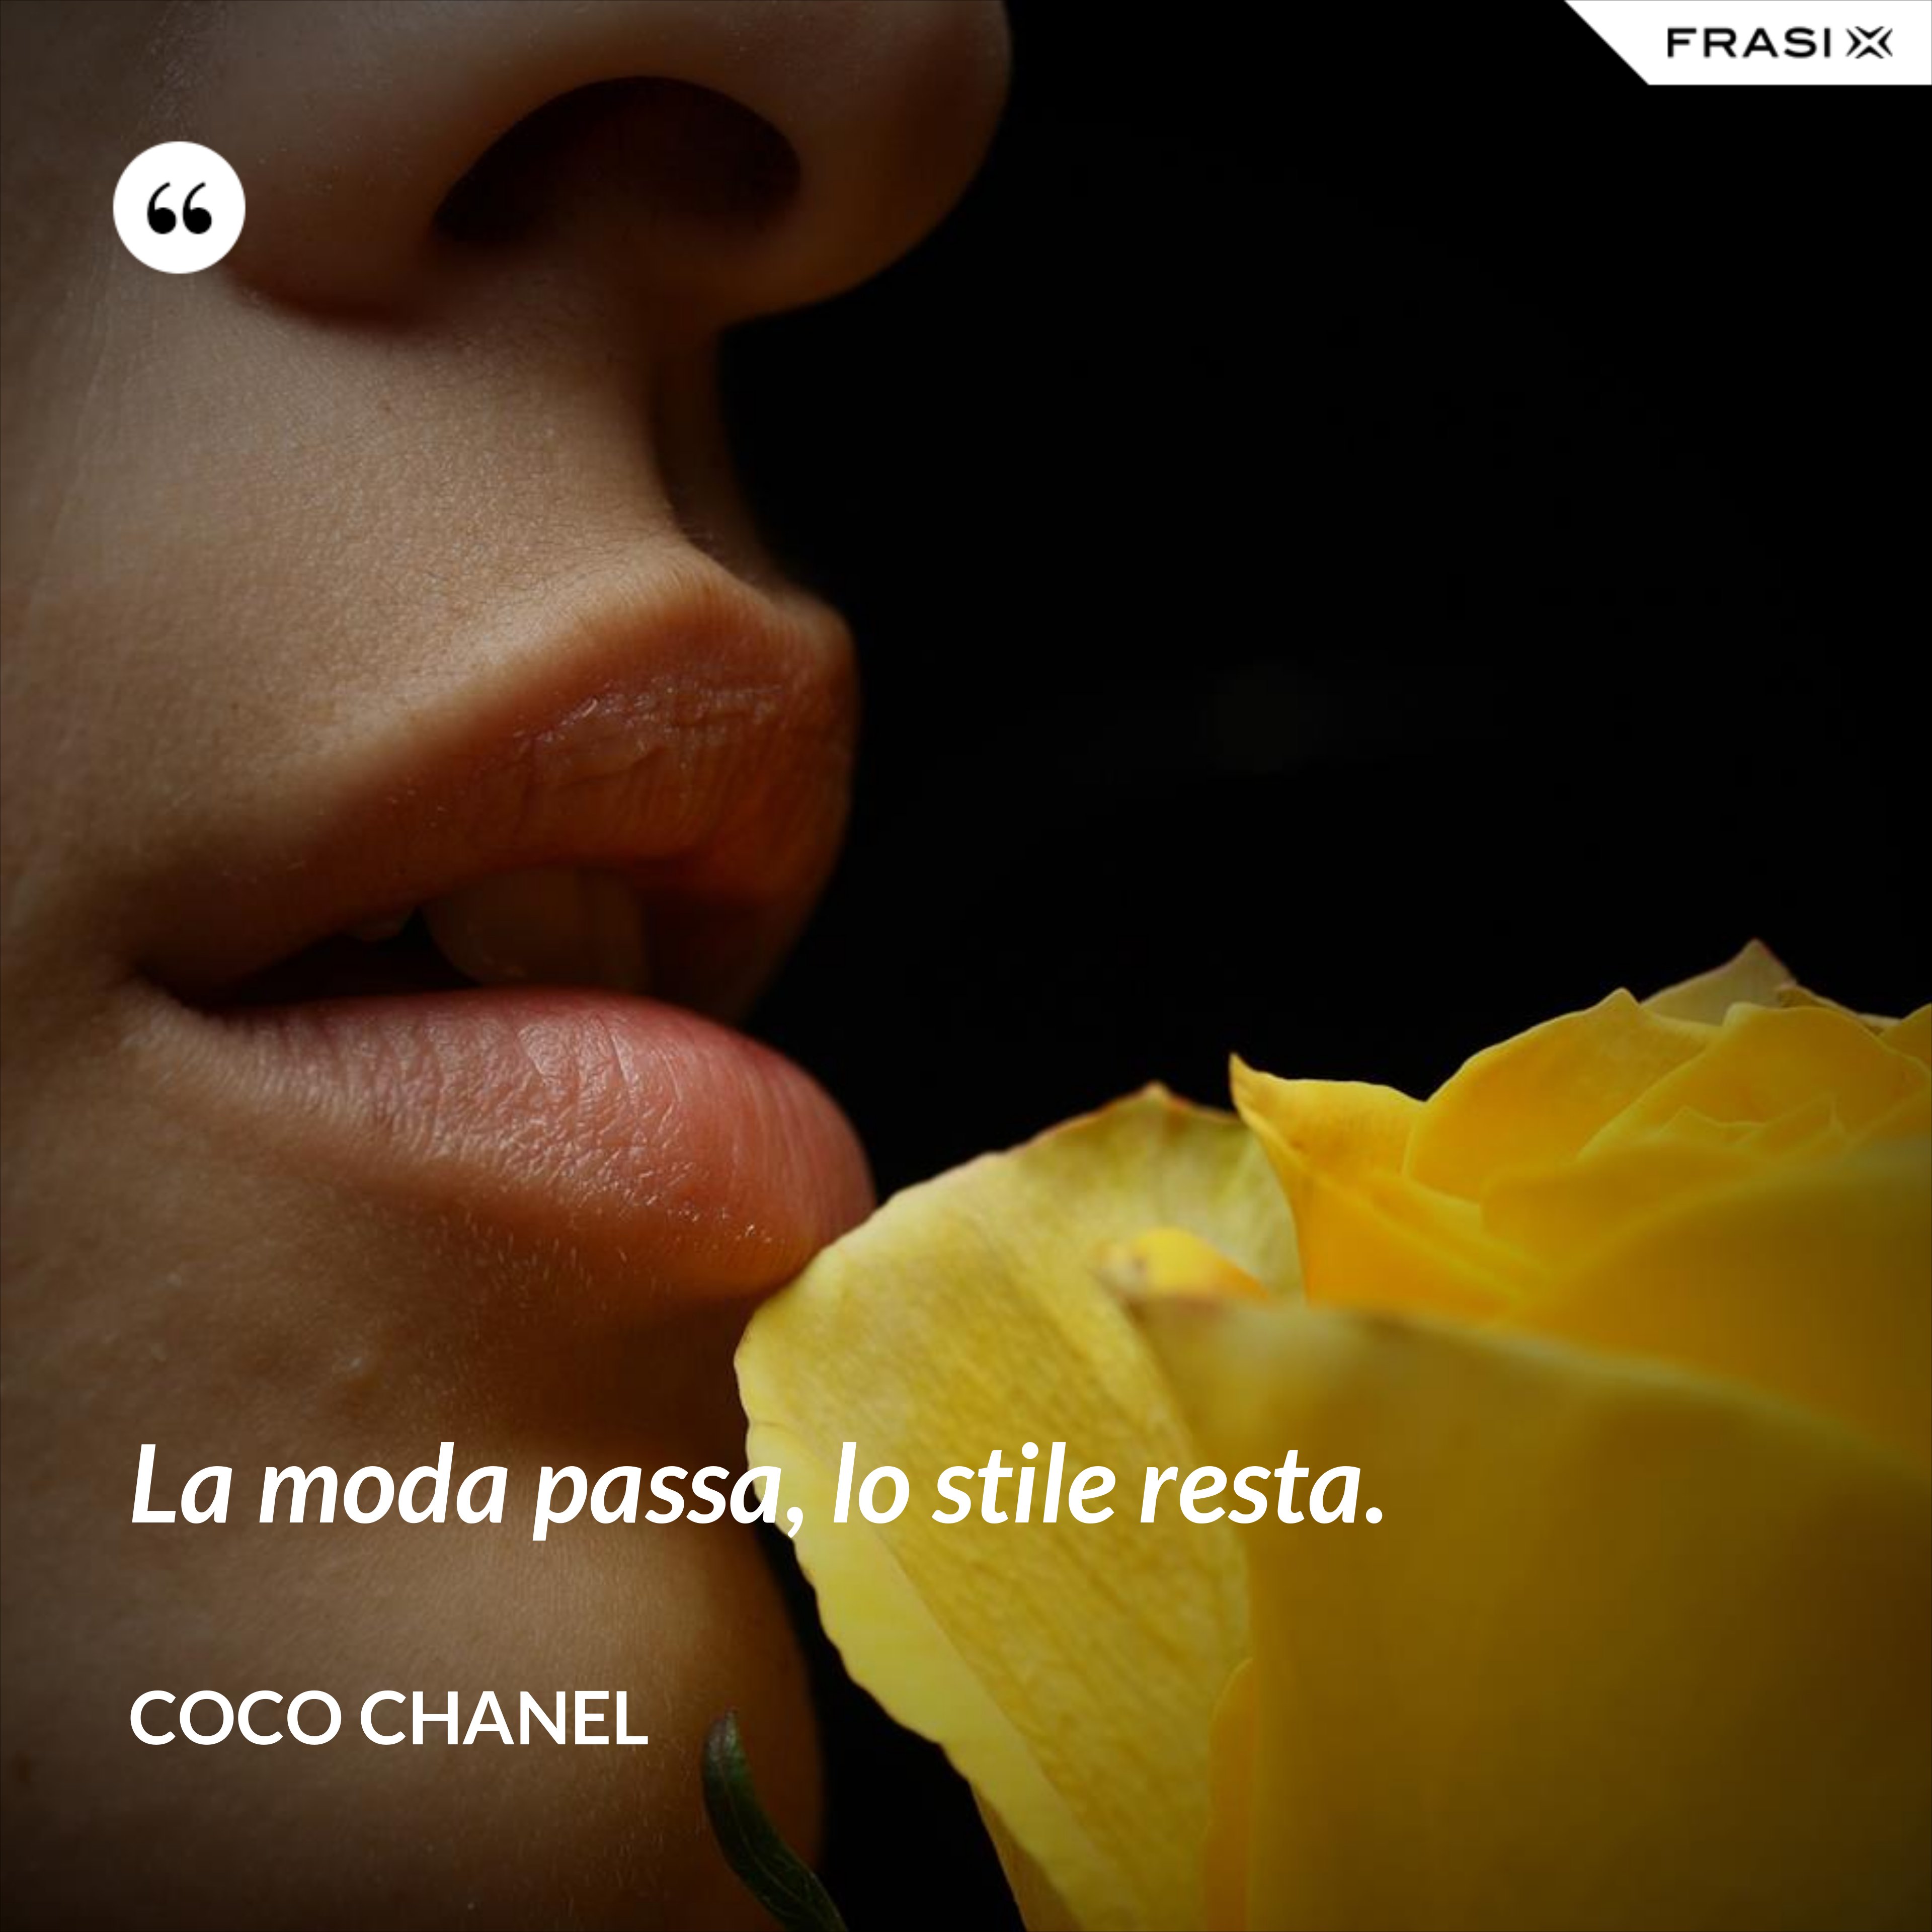 La moda passa, lo stile resta. - Coco Chanel